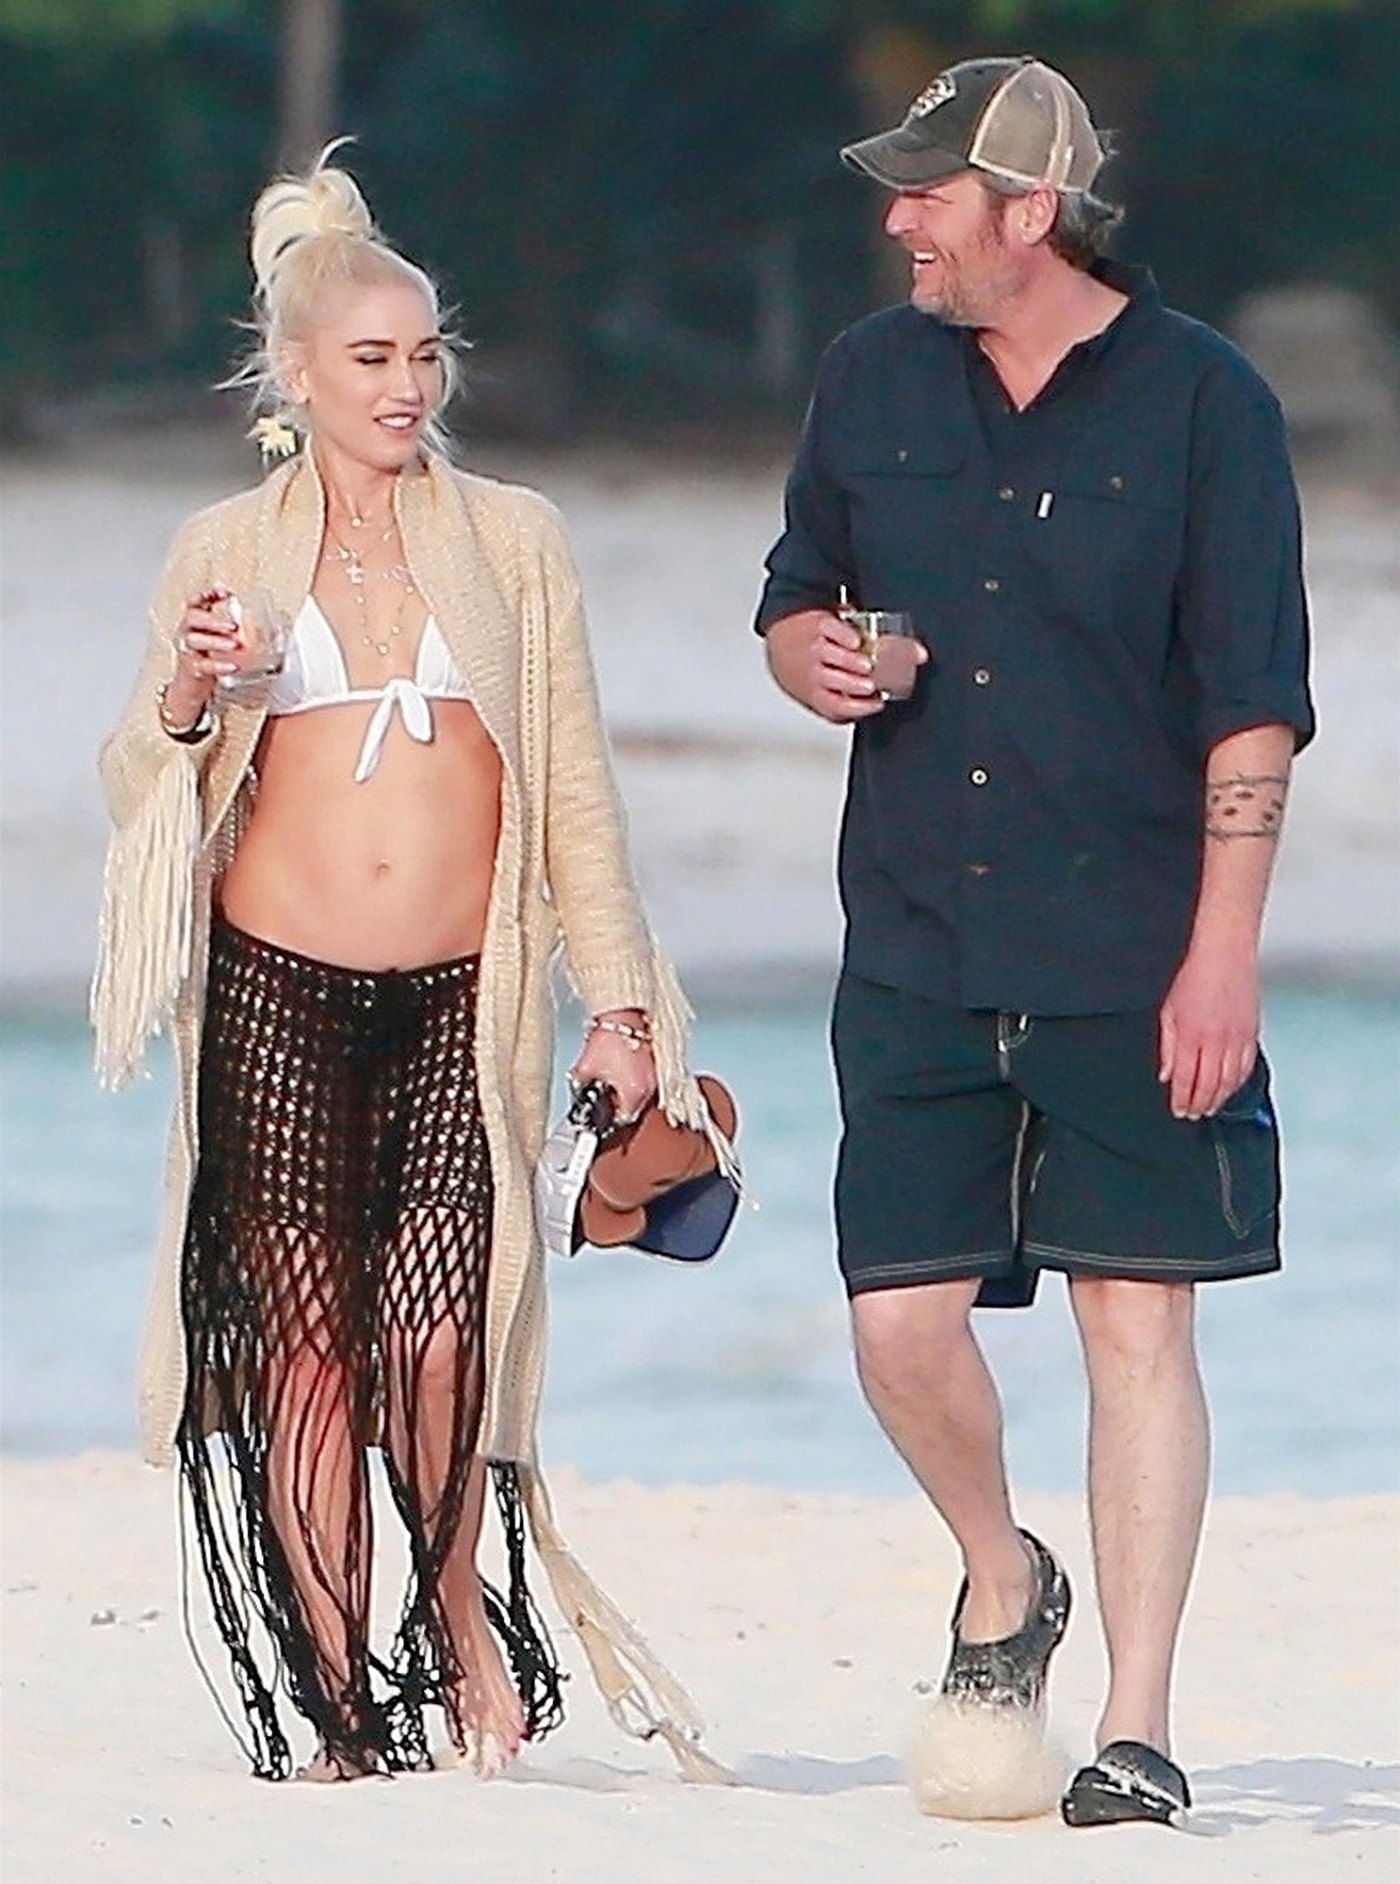 Gwen Stefani Blake Shelton Beach Vacation Playa Del Carmen Mexico 5 ?w=1400&quality=86&strip=all